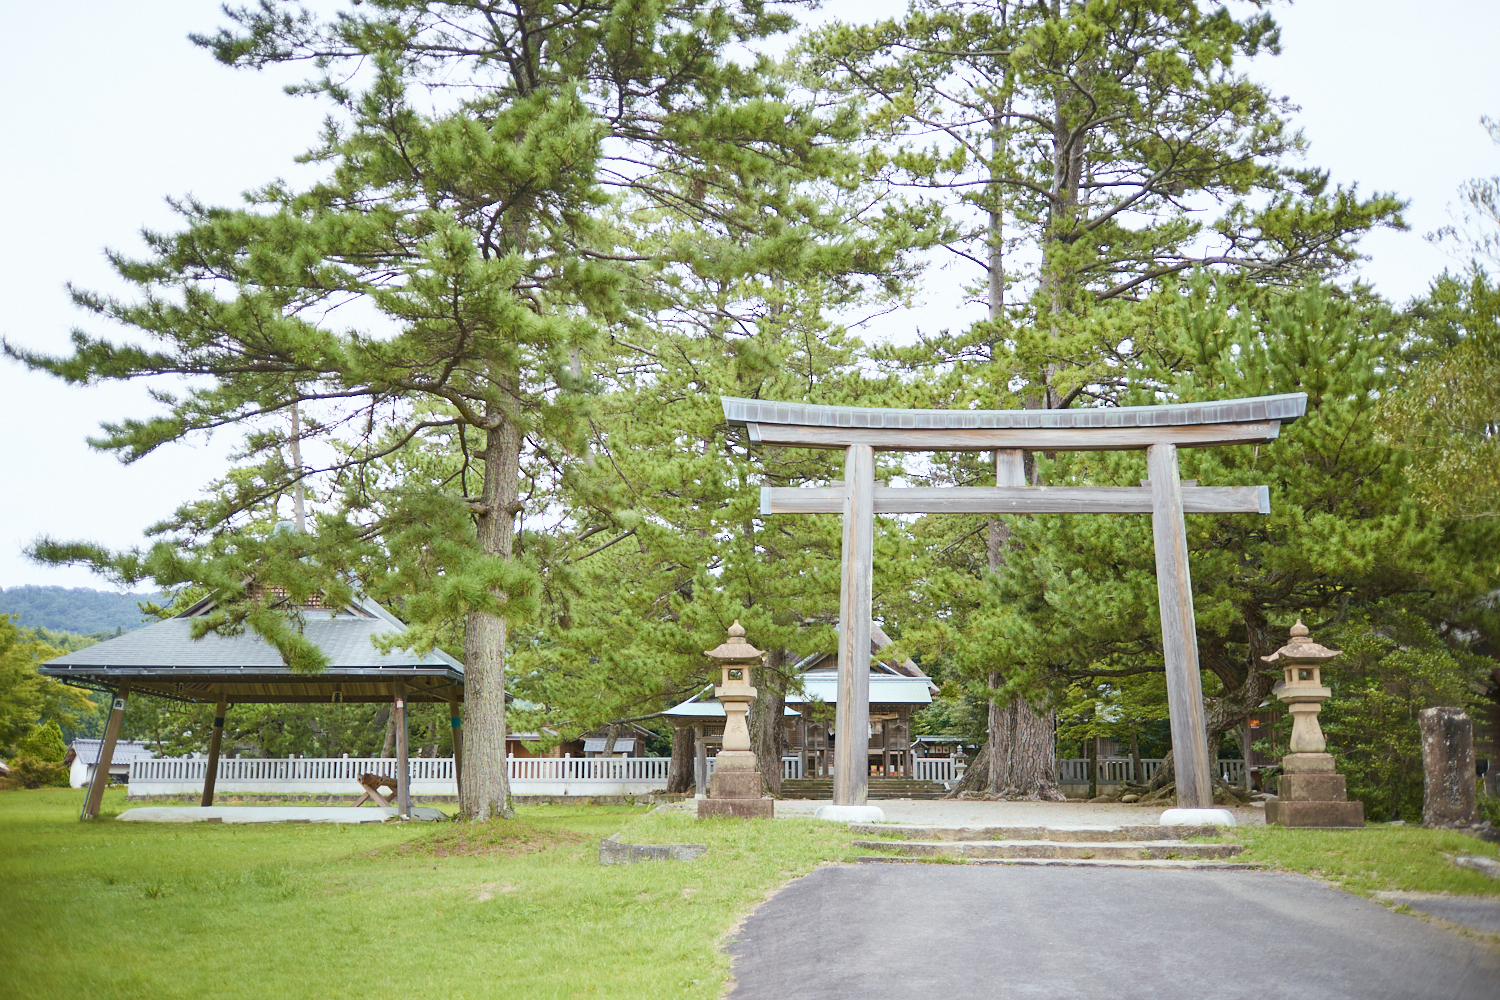 鳥居の左手には大きな土俵。古典相撲には各集落の代表が参加する。